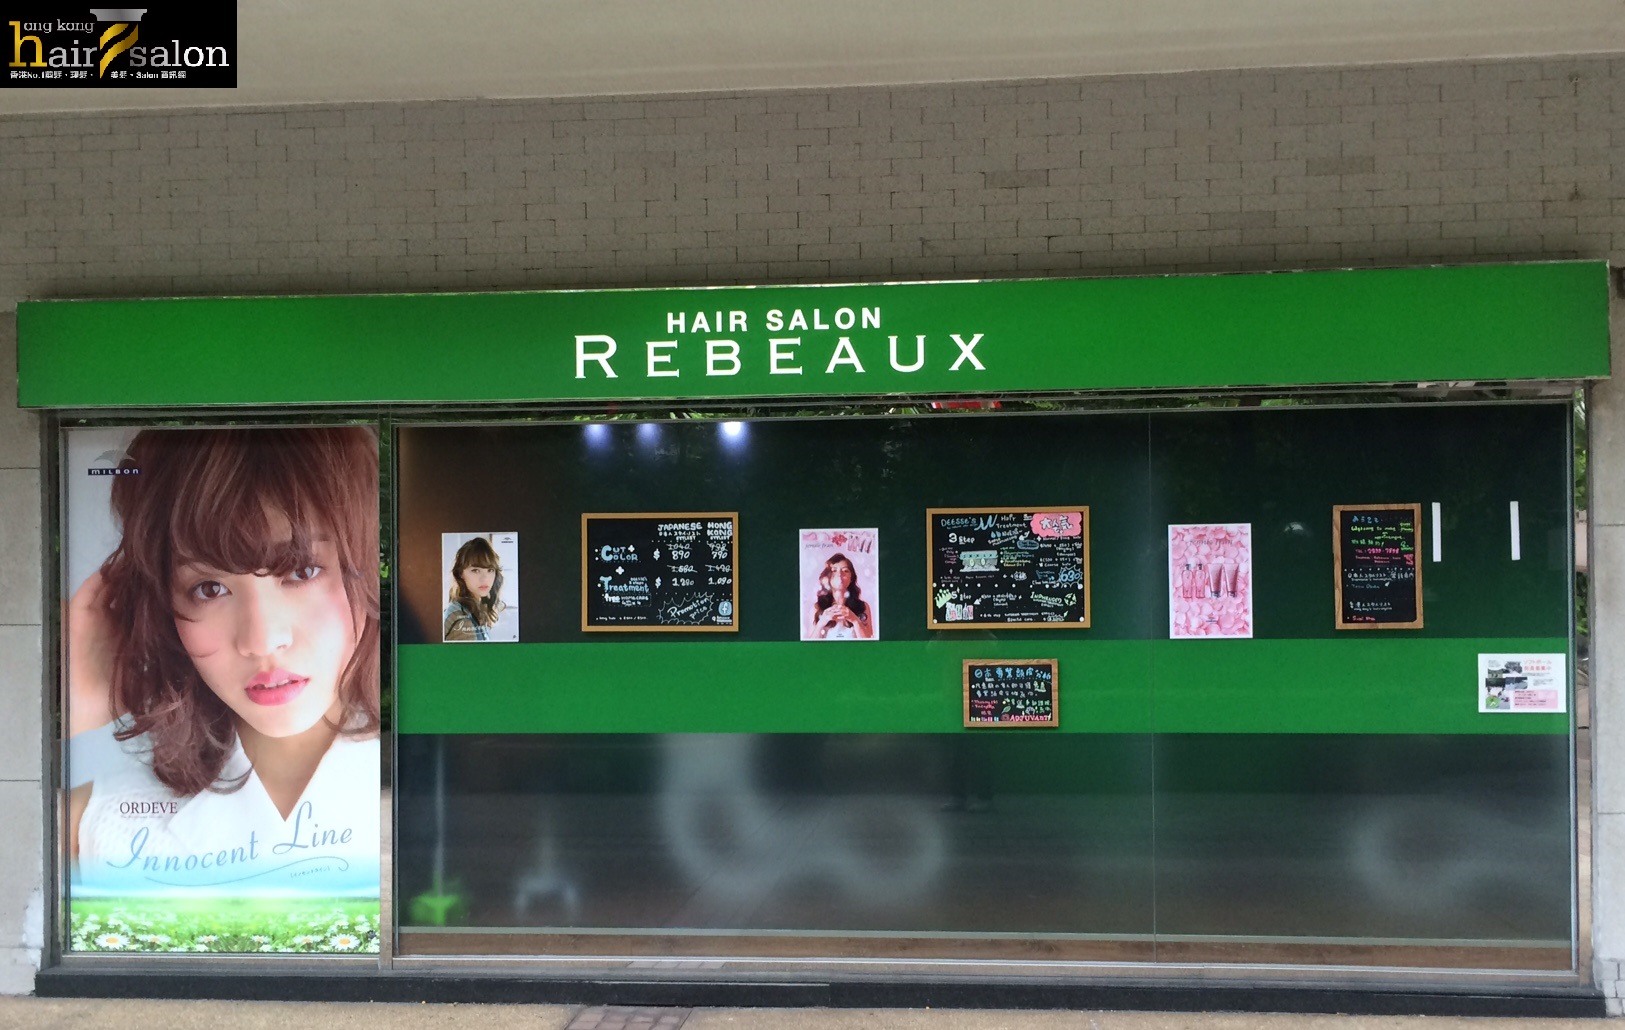 髮型屋: Rebeaux Hair Salon